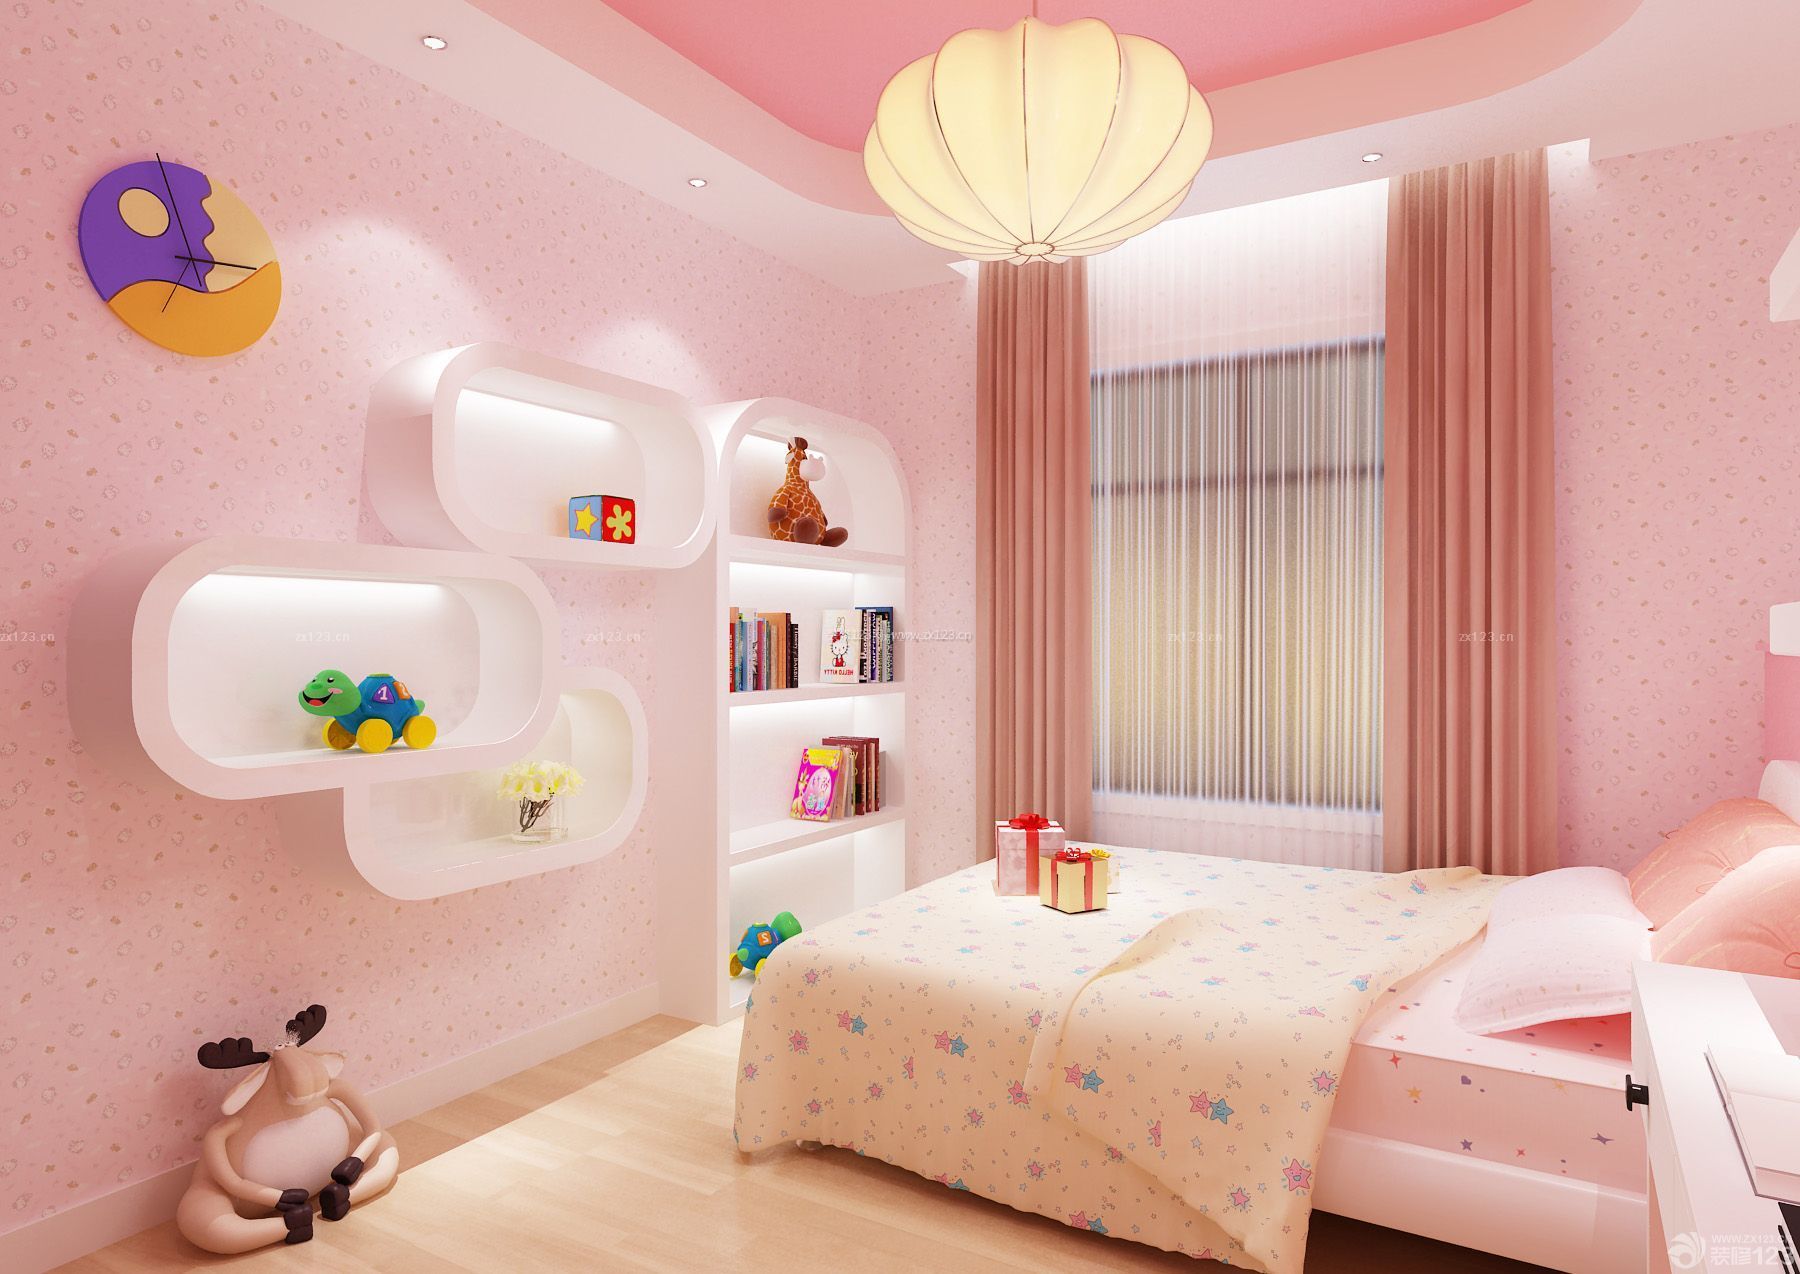 可爱儿童房间室内装饰设计效果图